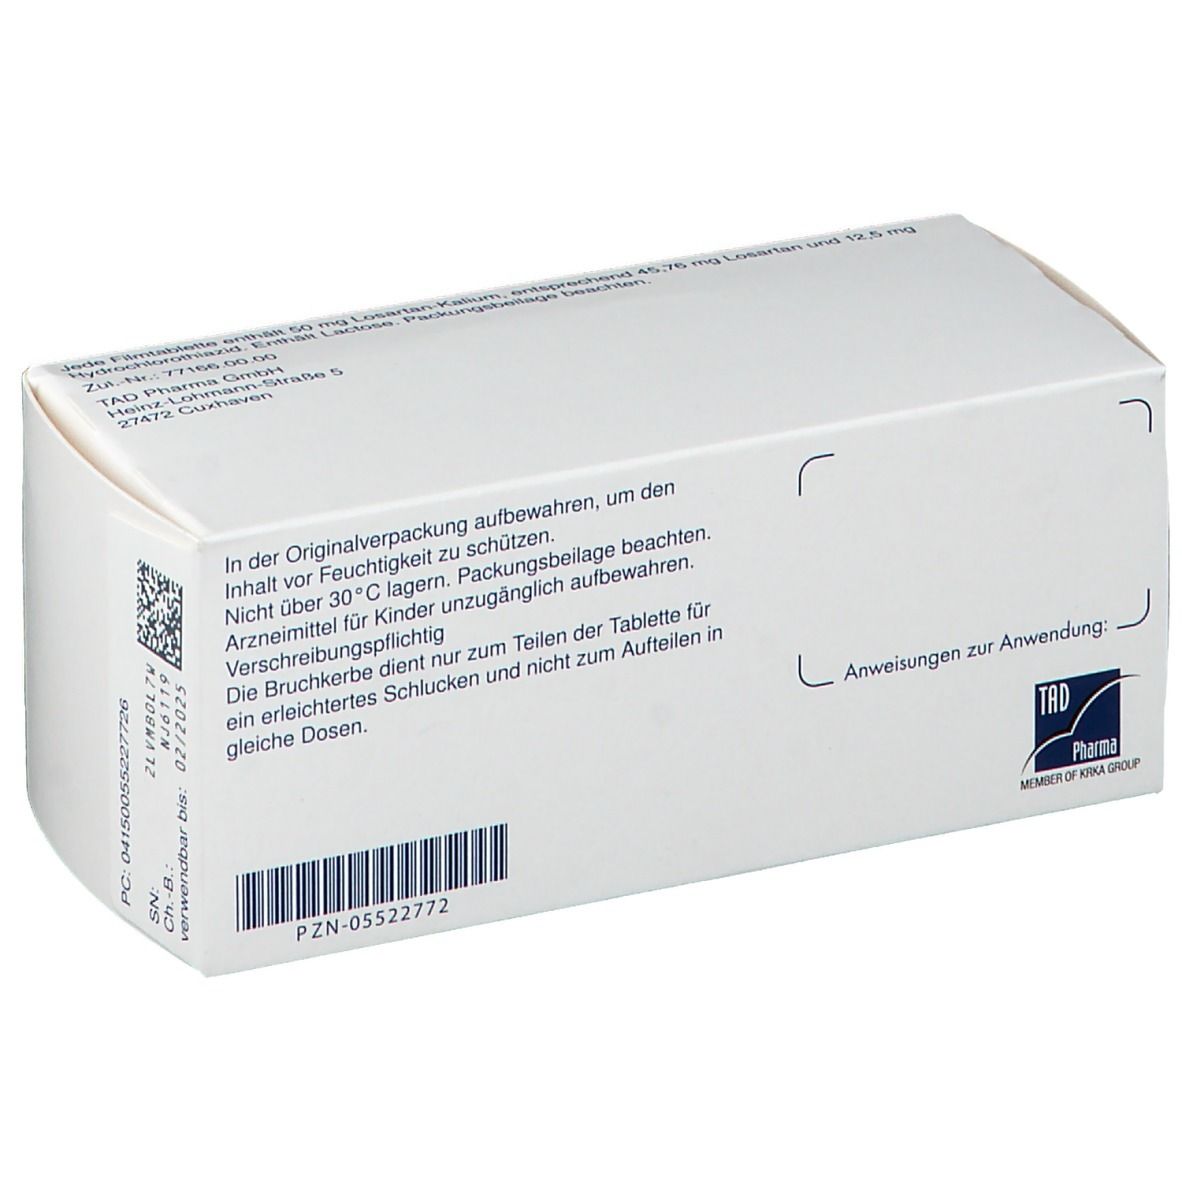 Losartan-Kalium HCTad® 50 mg/12,5 mg